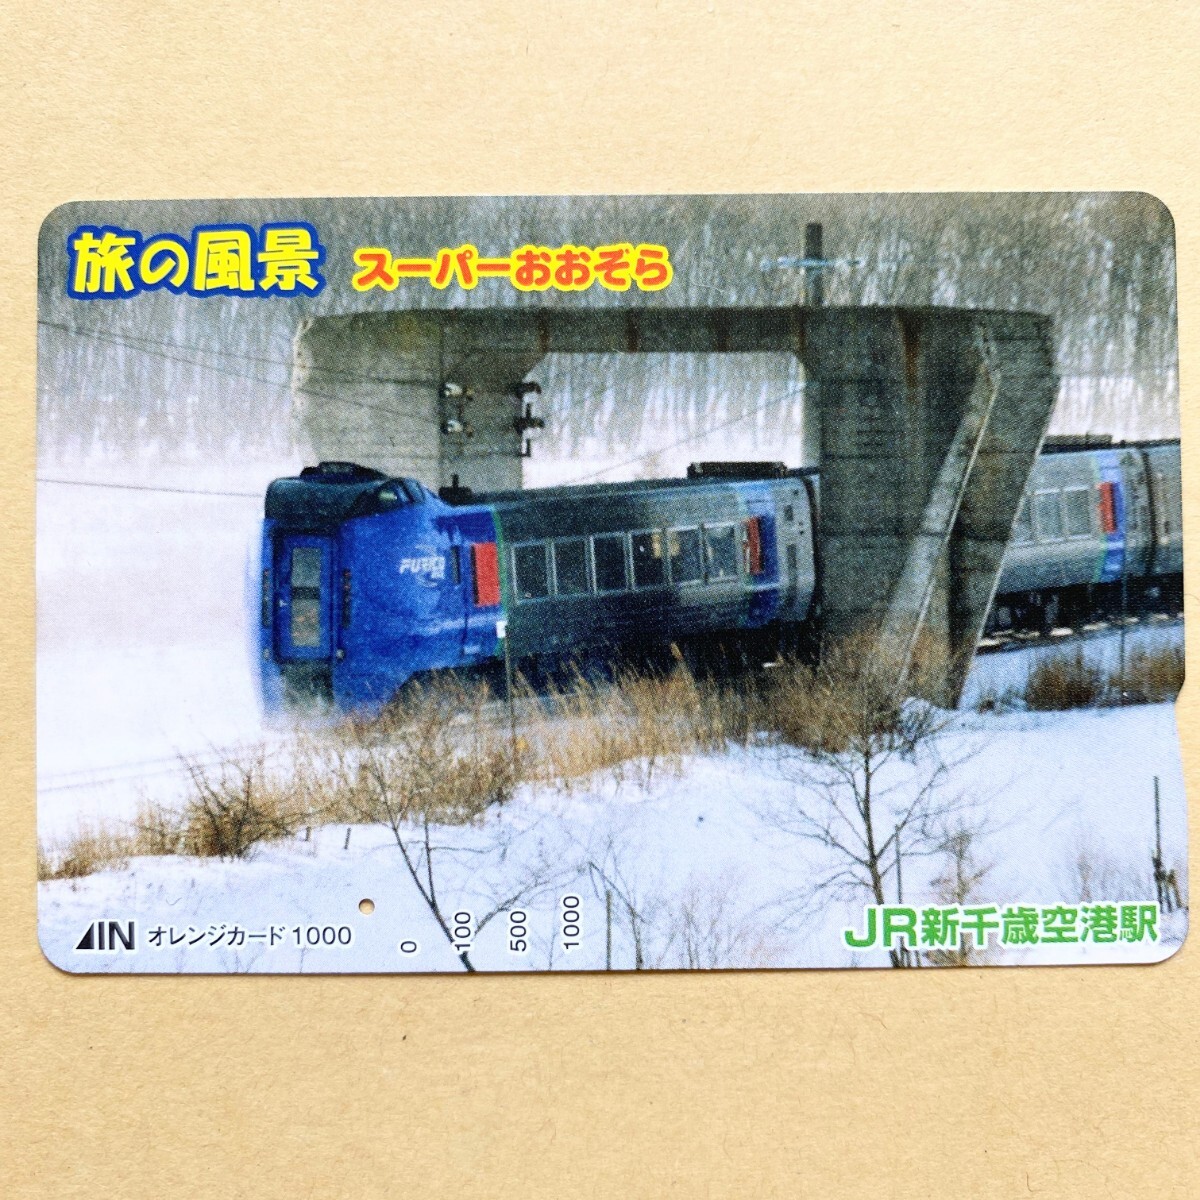 【使用済】 オレンジカード JR北海道 旅の風景 スーパーおおぞら_画像1